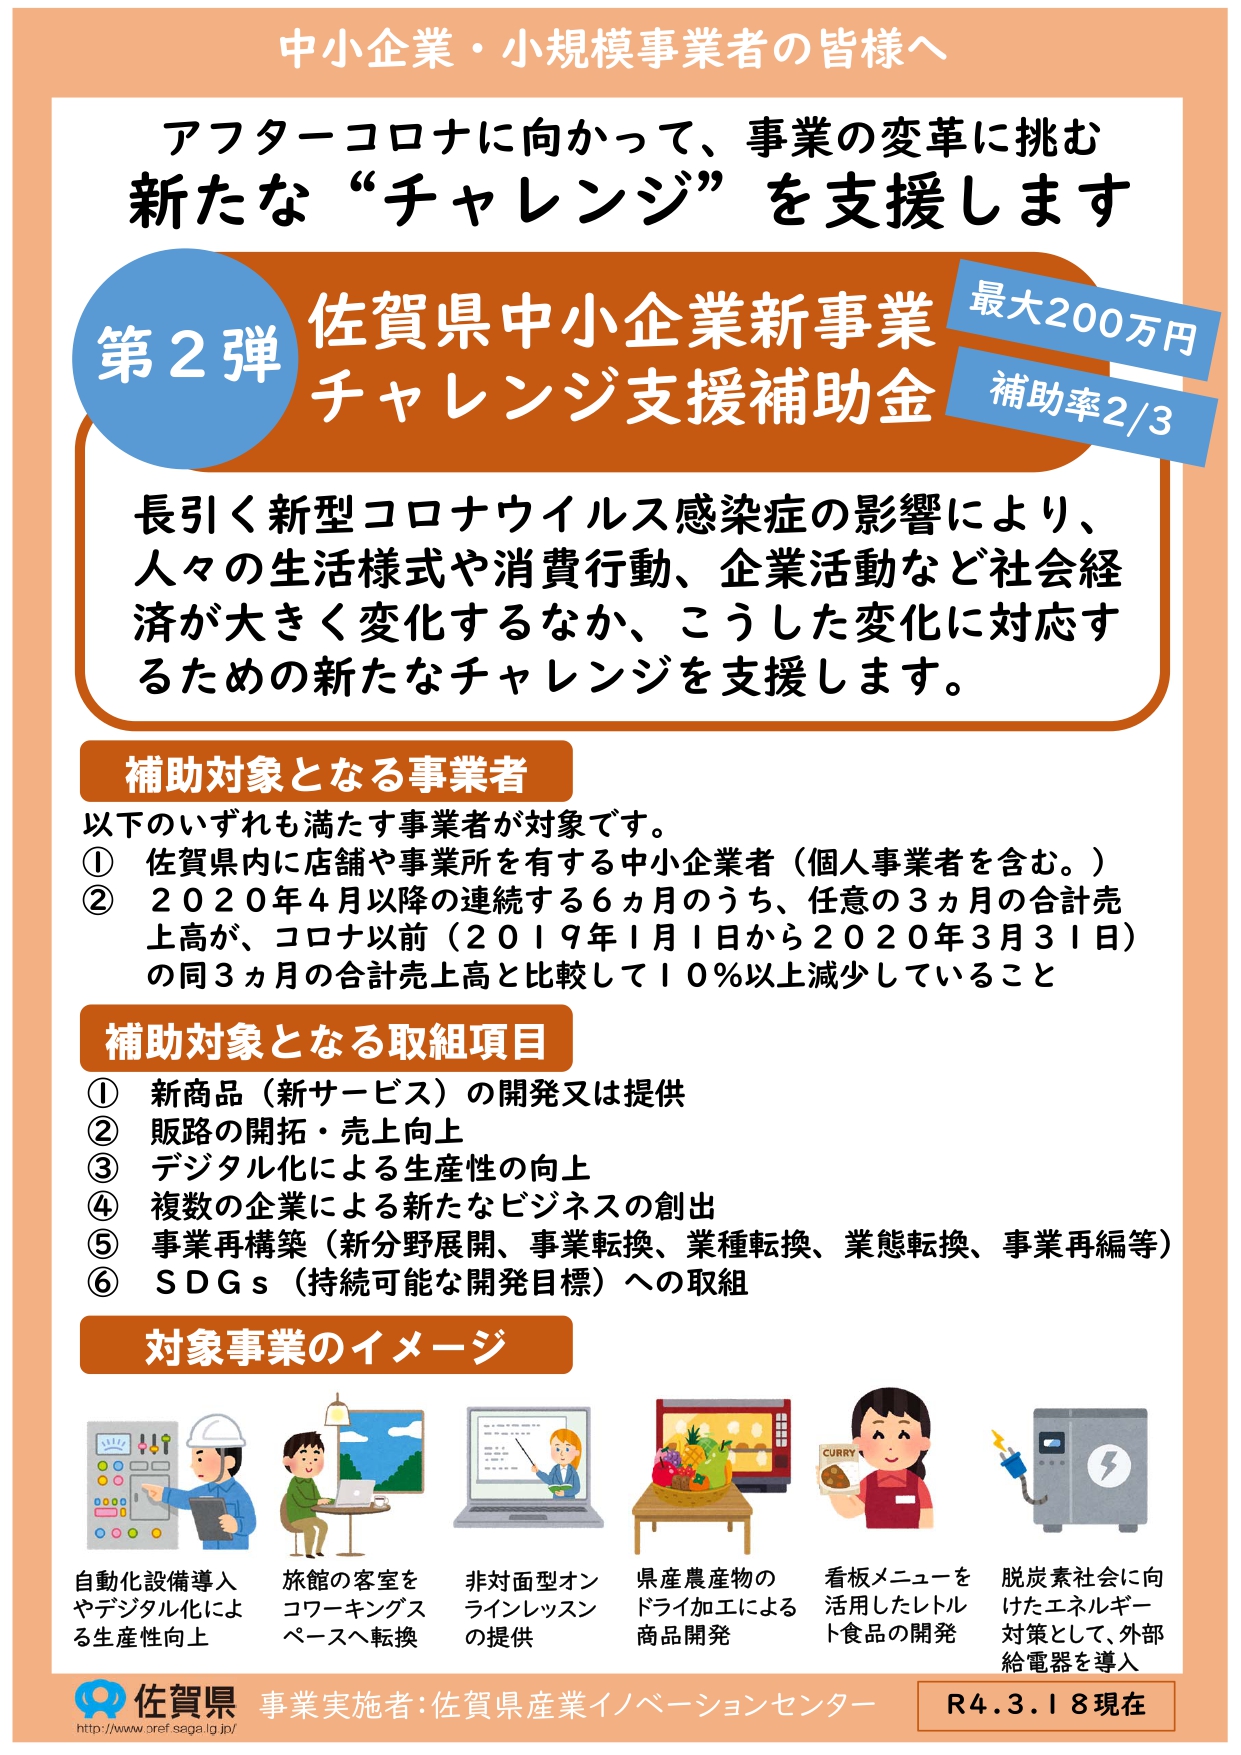 「佐賀県中小企業新事業チャレンジ支援補助金」公募のお知らせ